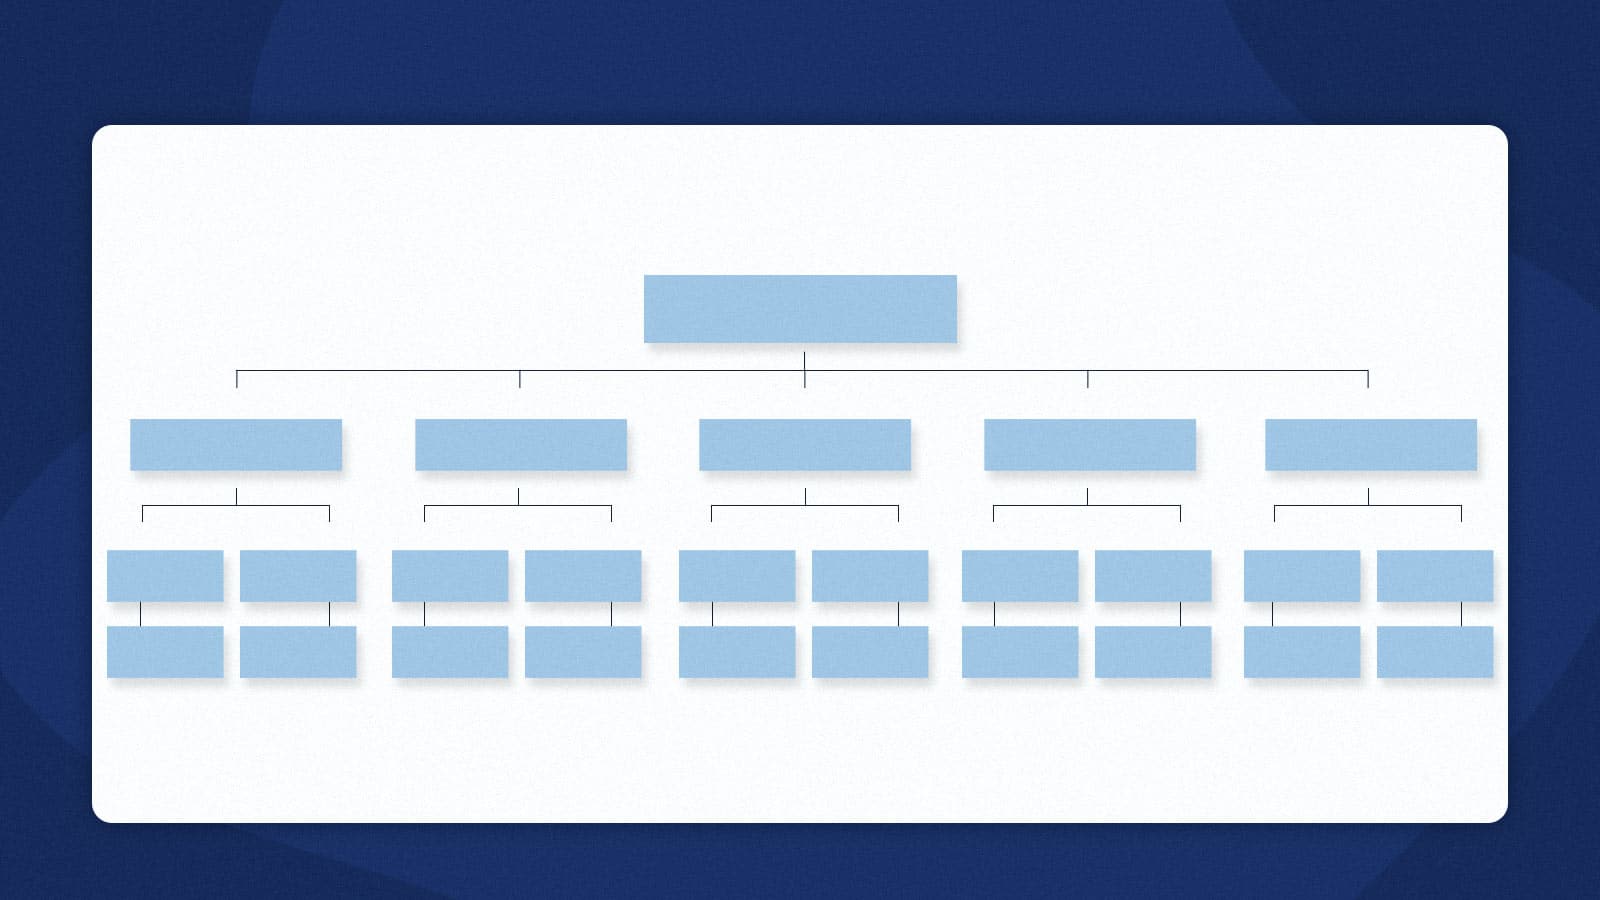 Website architecture diagram